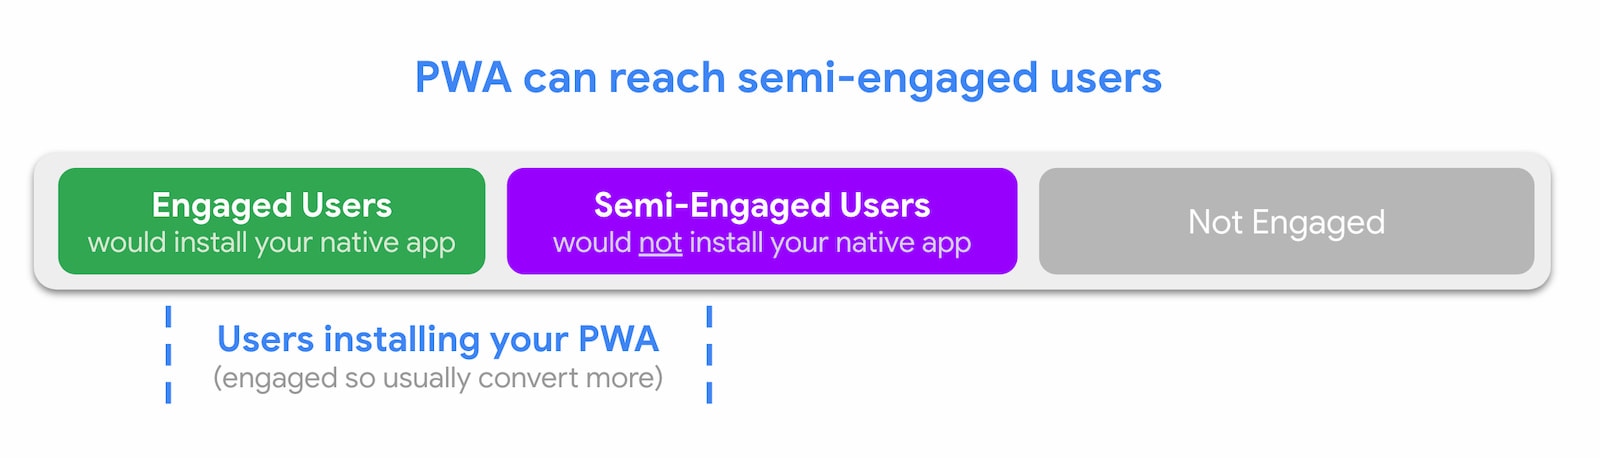 אפליקציות PWA יכולות להגיע למשתמשים שמגלים התעניינות למחצה.